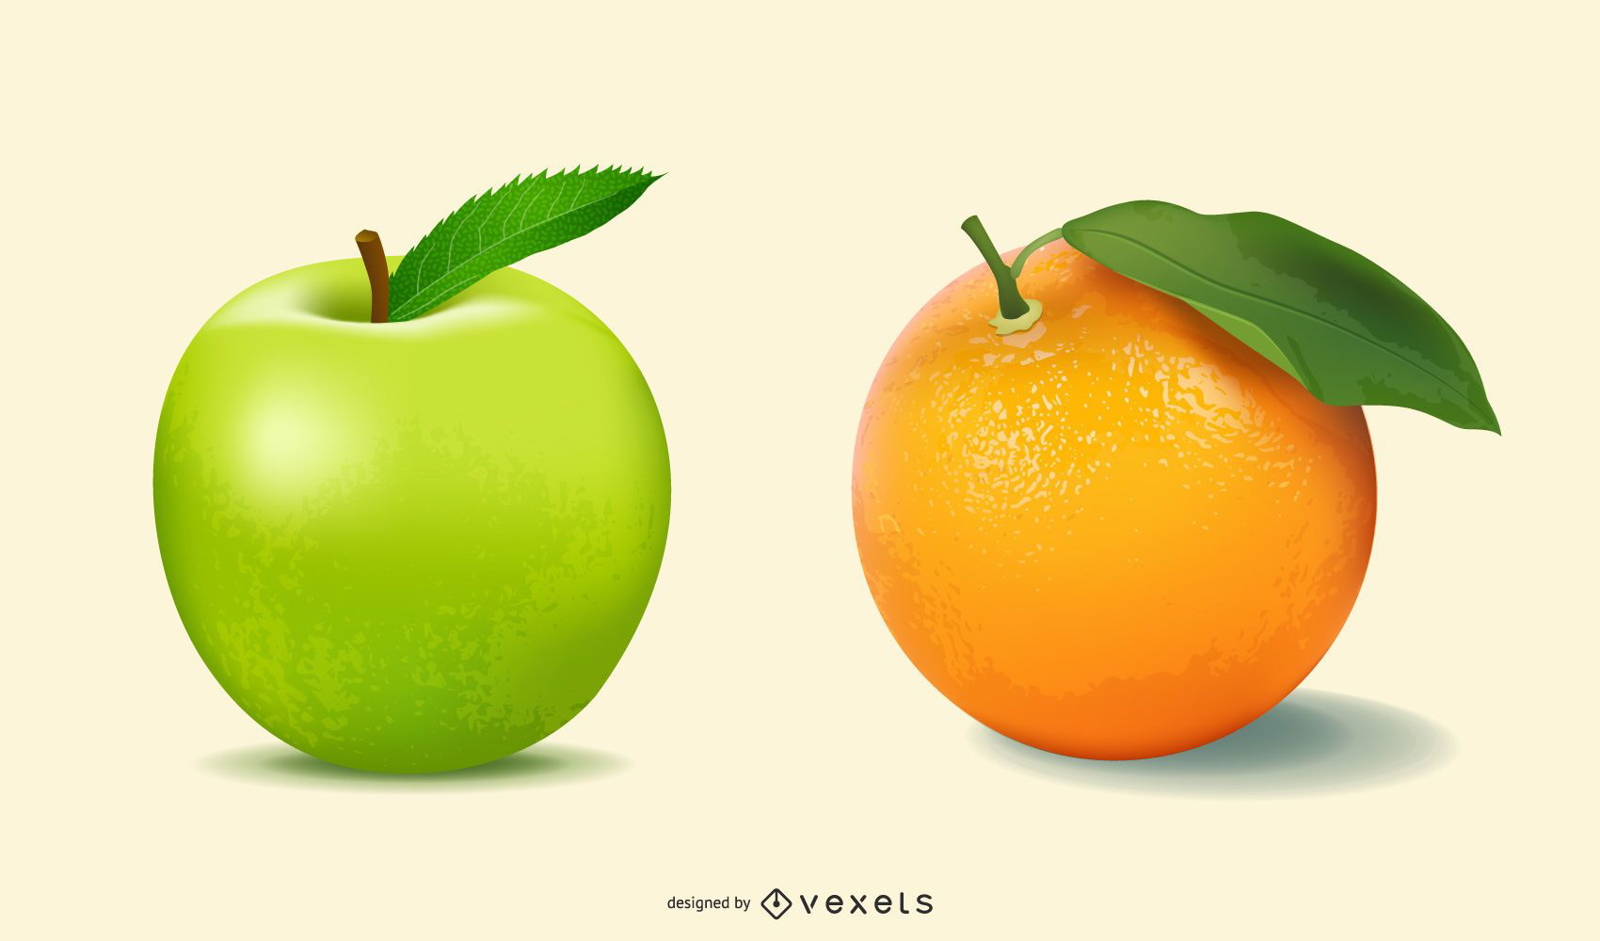 Ilustra?es realistas de frutas em 3D